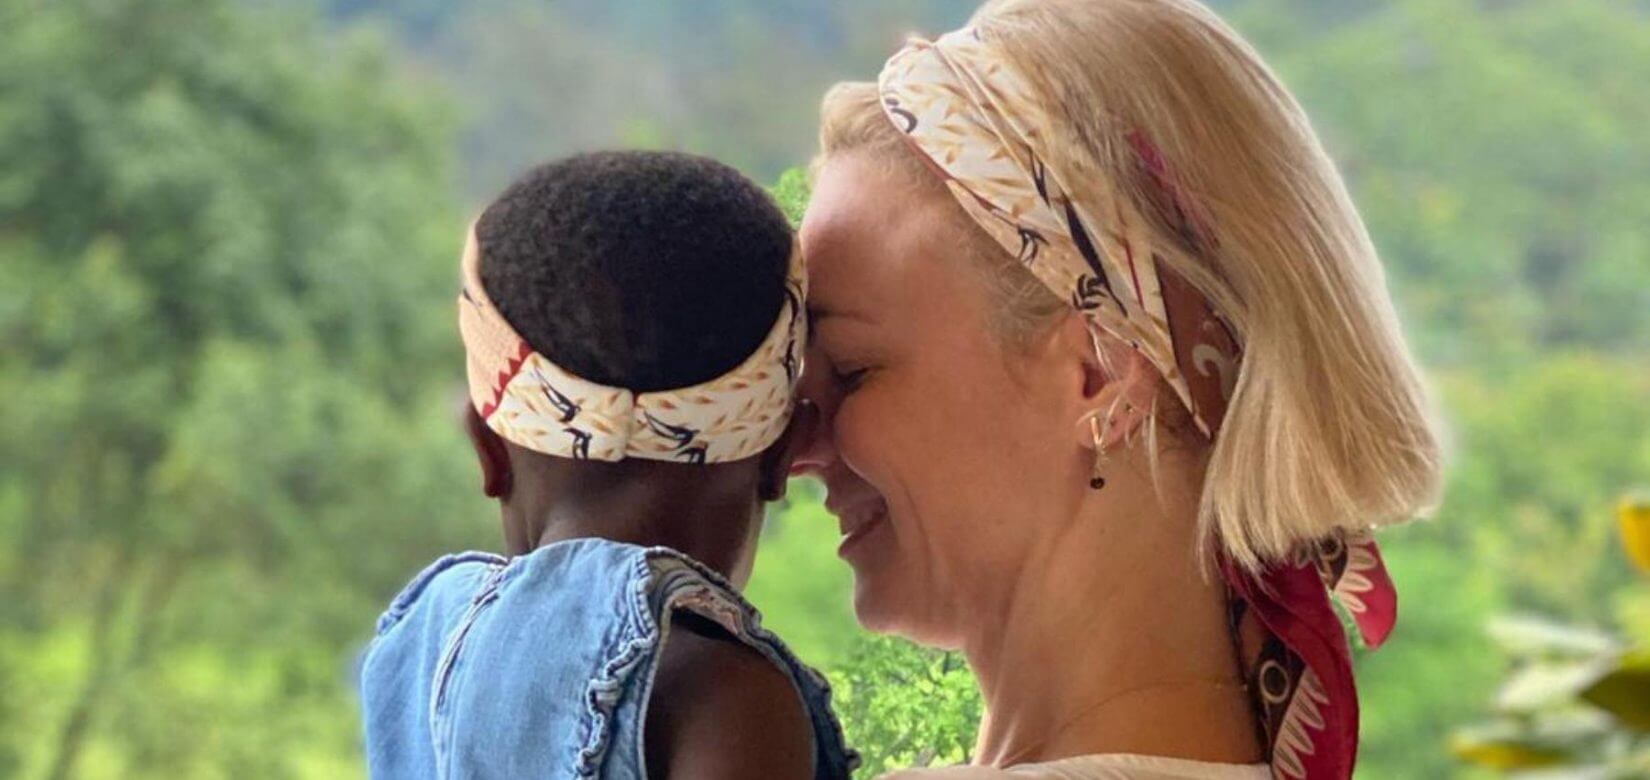 Χριστίνα Κοντοβά: Η συγκλονιστική στιγμή που αποχαιρετά την κόρη της στην Ουγκάντα (φωτό)